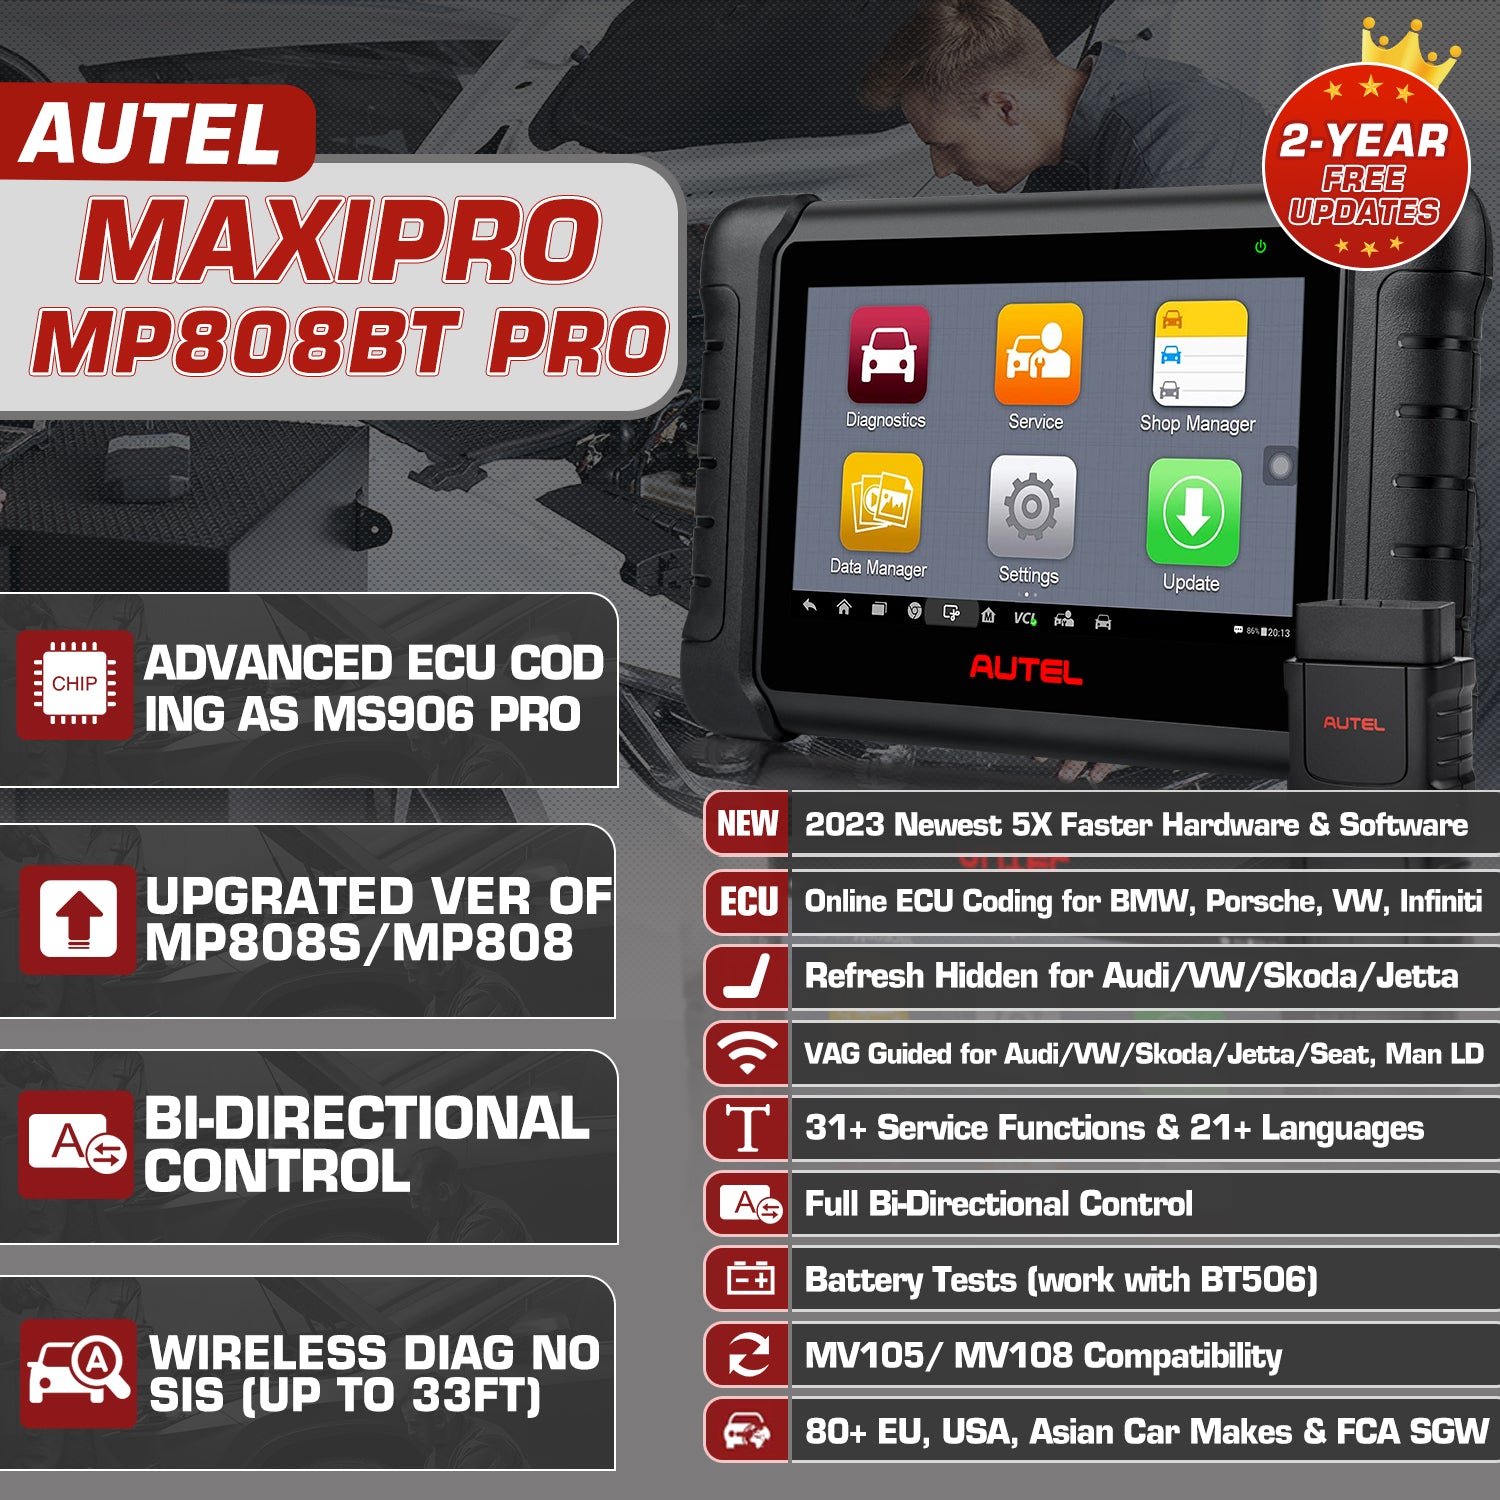 Autel MaxiPRO MP808BT Pro Features